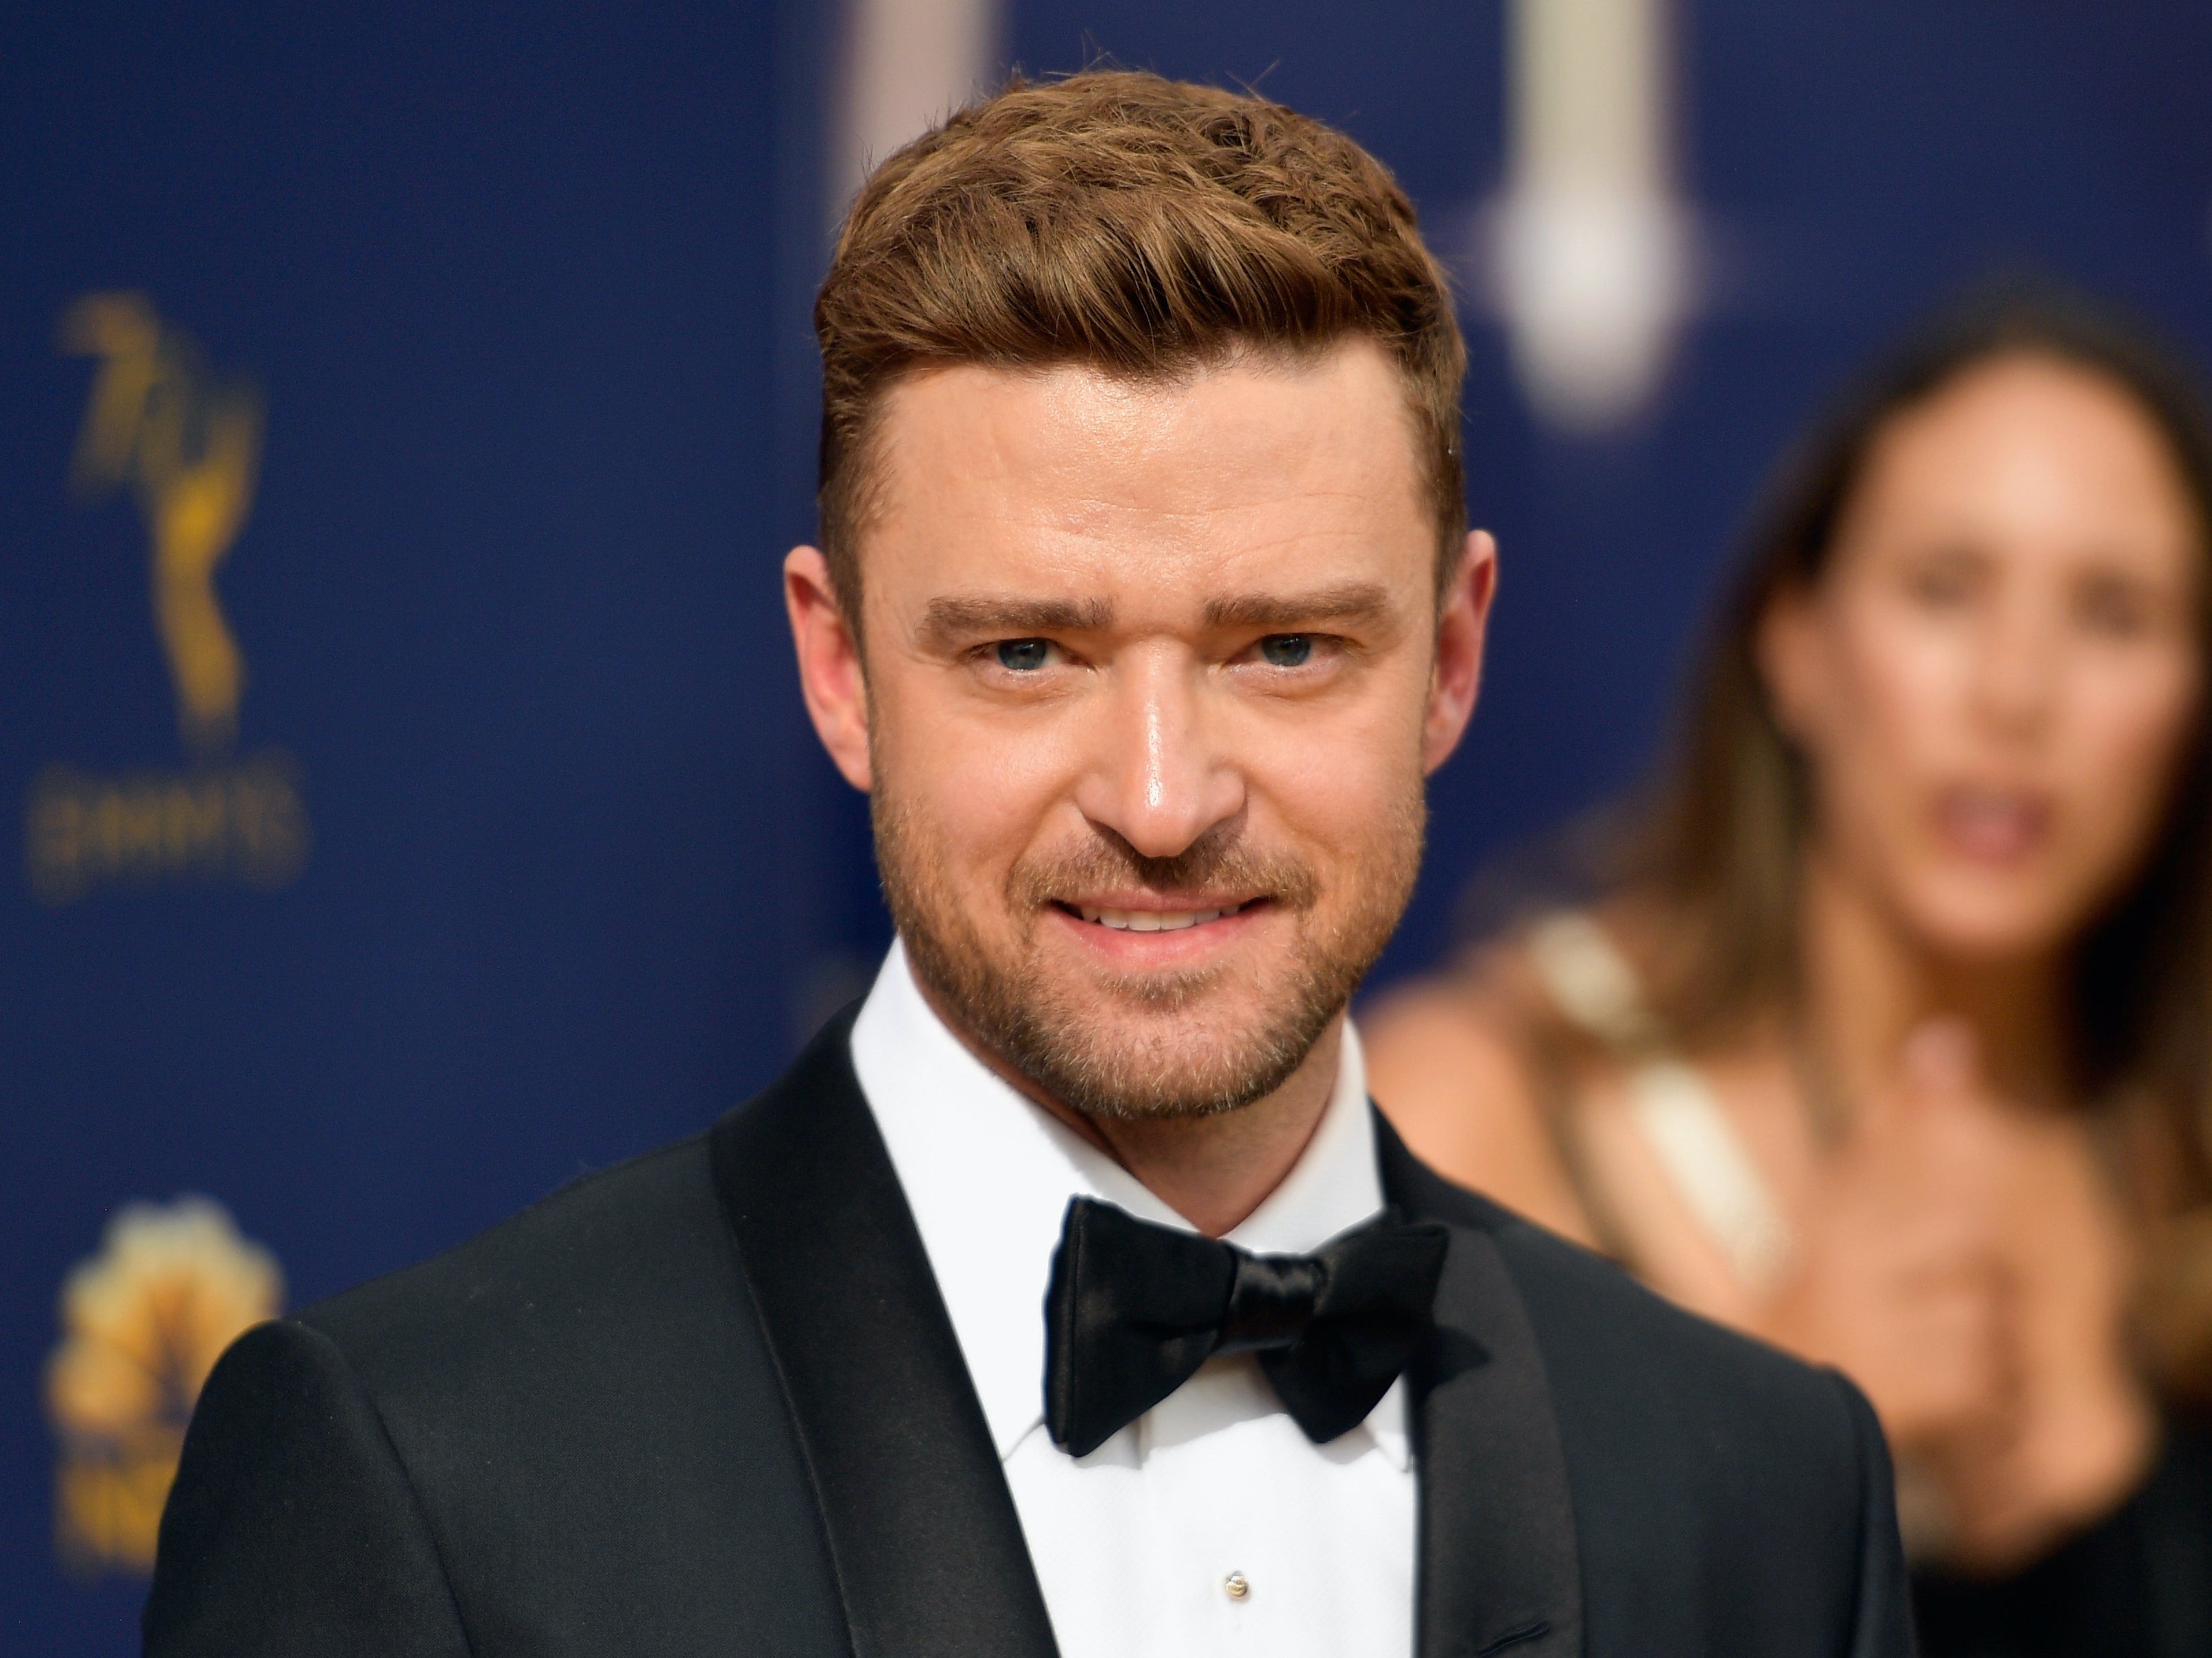 Infamous Super Bowl nip slip saw Justin Timberlake invent term